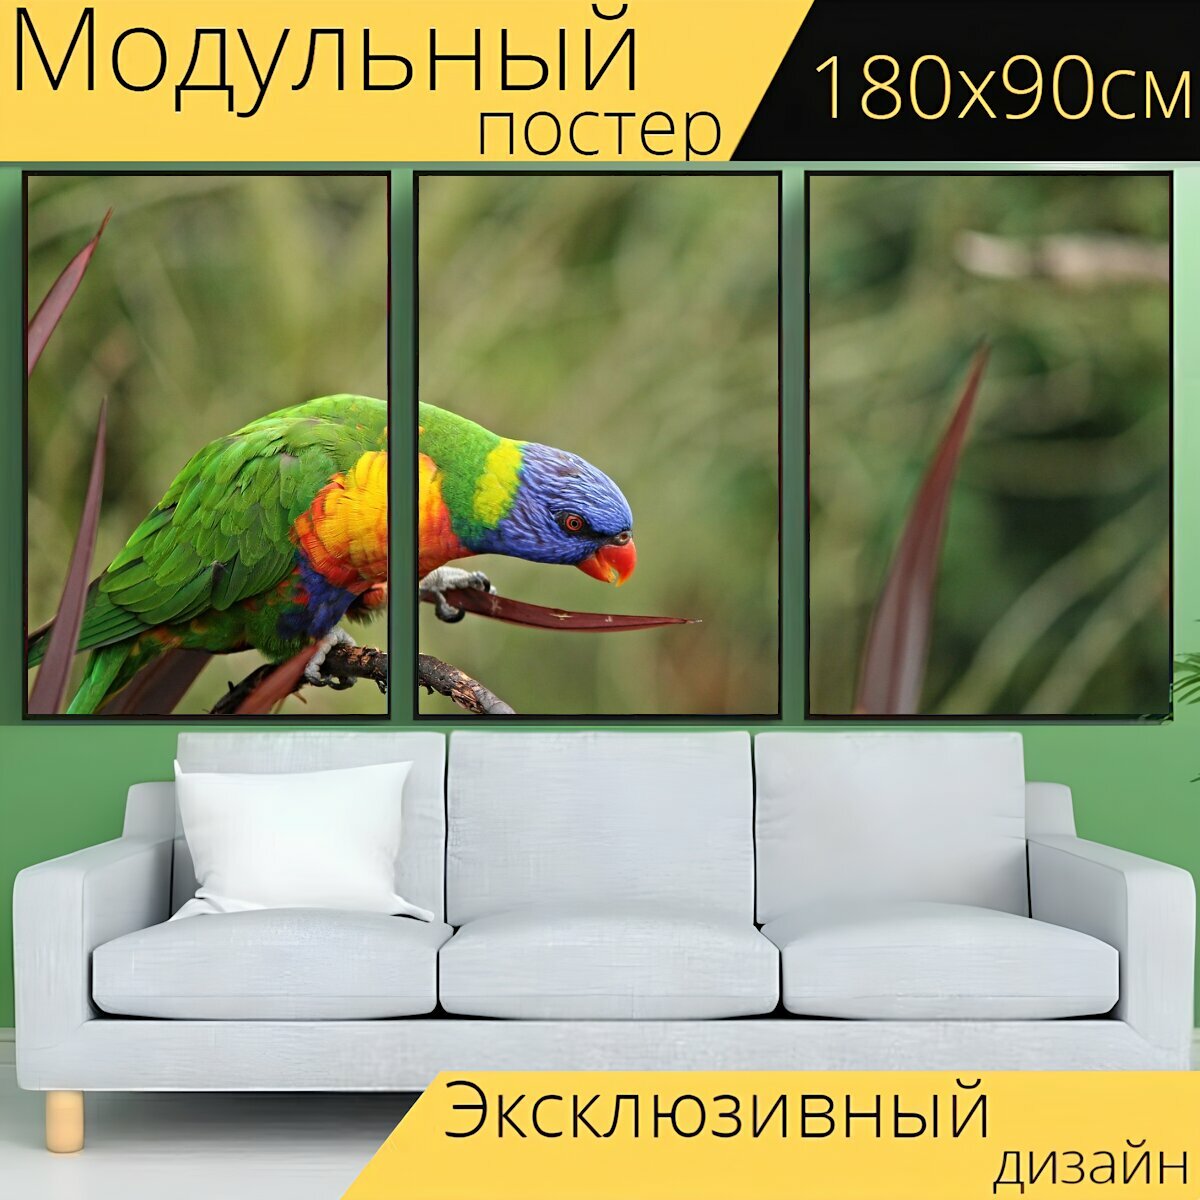 Модульный постер "Попугай птица мускусный лорикет" 180 x 90 см. для интерьера